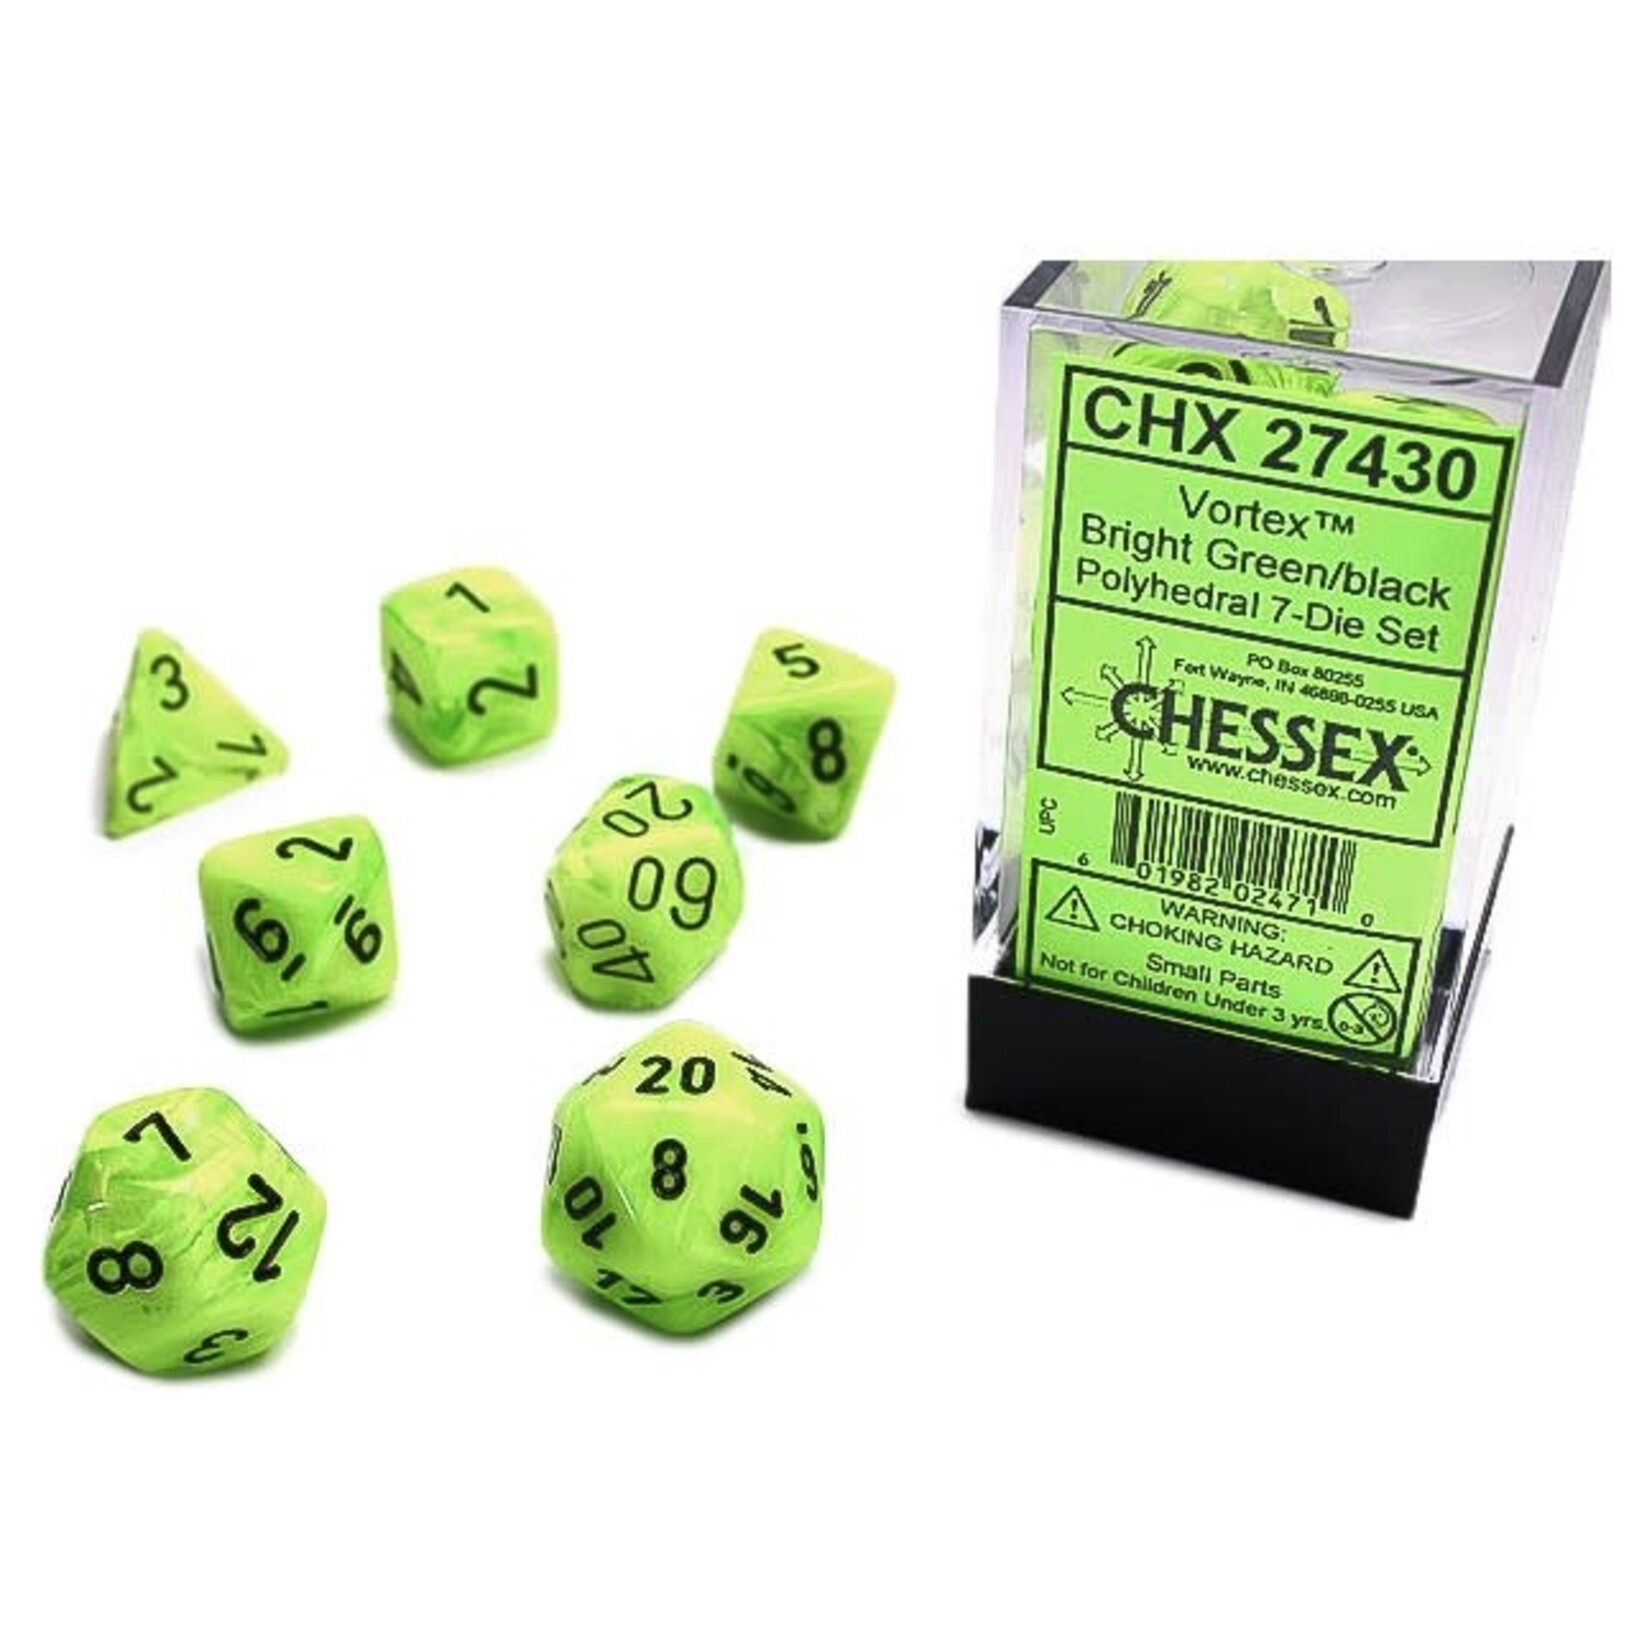 Chessex Polyhedral 7-Die Set: Vortex Bright Green with black